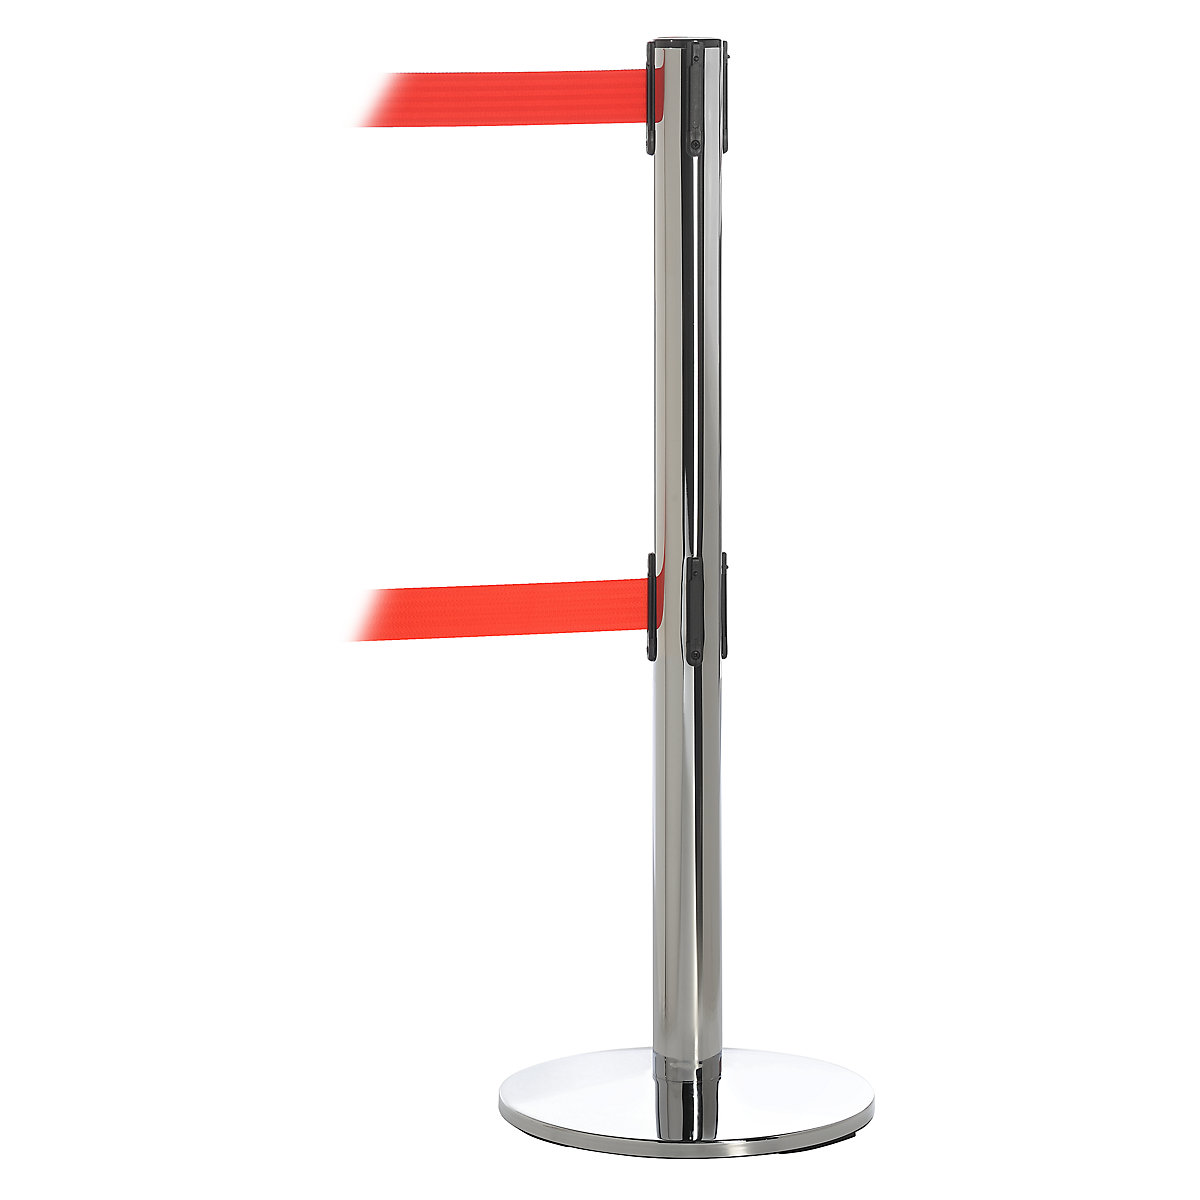 Poste de barreira com 2 cintas – Tensator, cromado, cinta vermelha, comprimento de extração 3650 mm-6